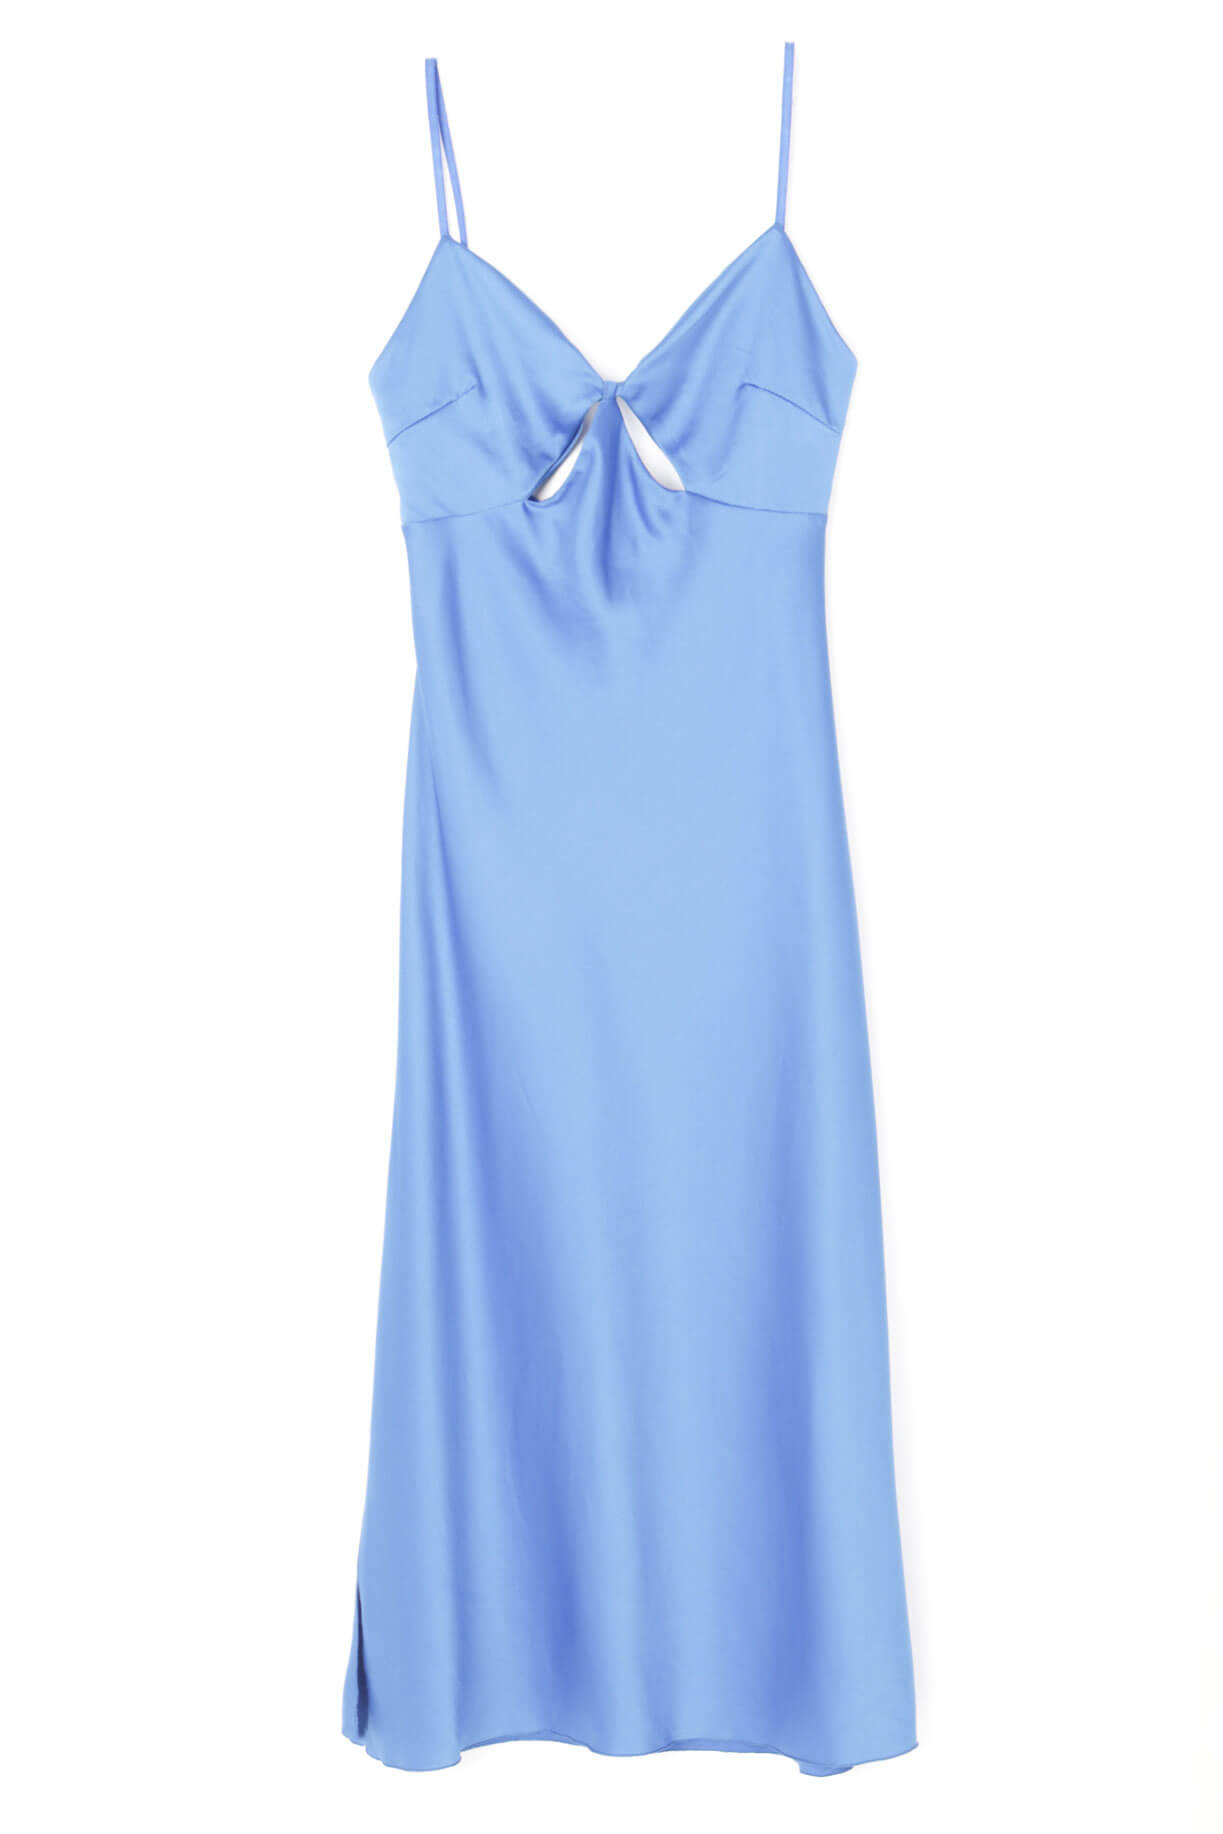 Φόρεμα Σατέν με Σκίσιμο στο Πλάι - Μπλε 60565